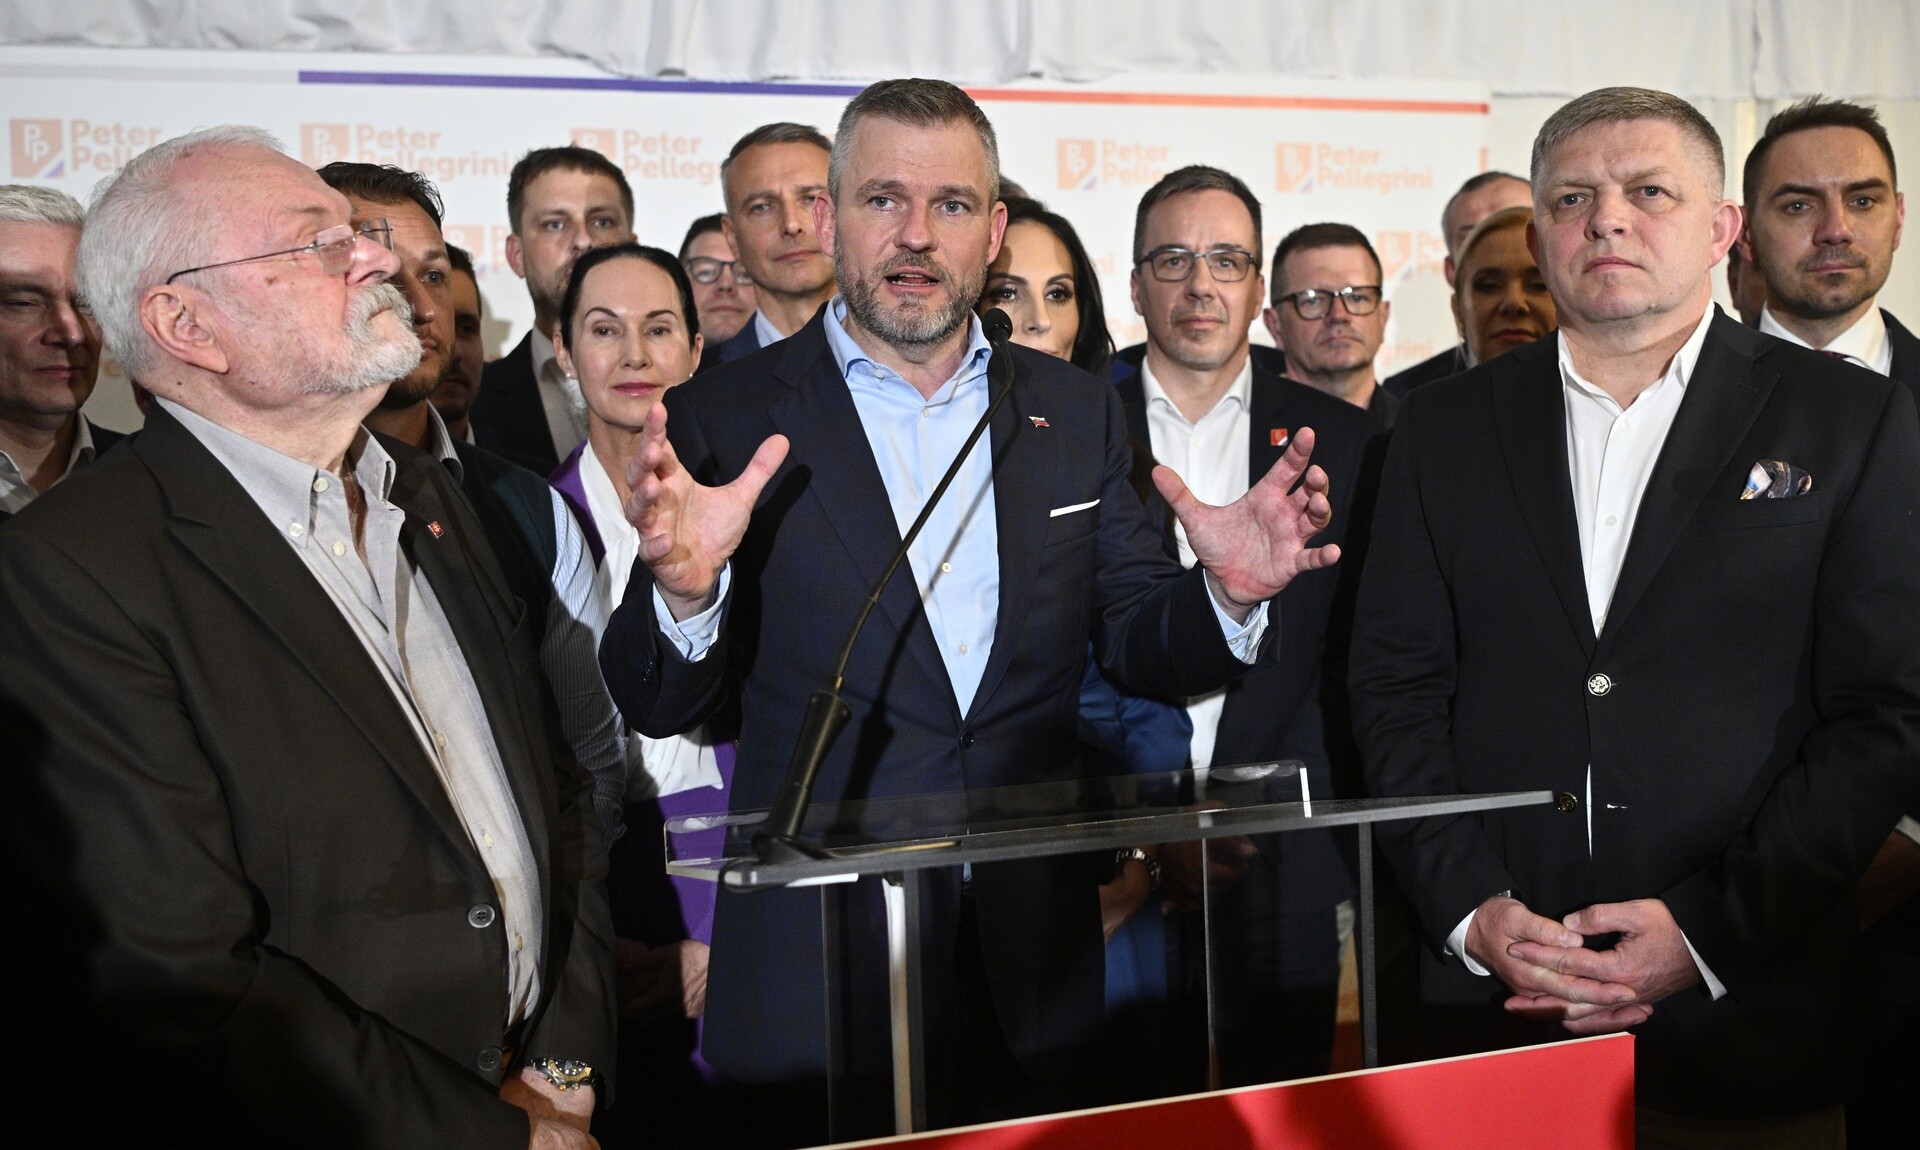 Σλοβακία: Ο Πέτερ Πελεγκρίνι νέος πρόεδρος της χώρας - «Είναι μεγάλη ικανοποίηση», δήλωσε